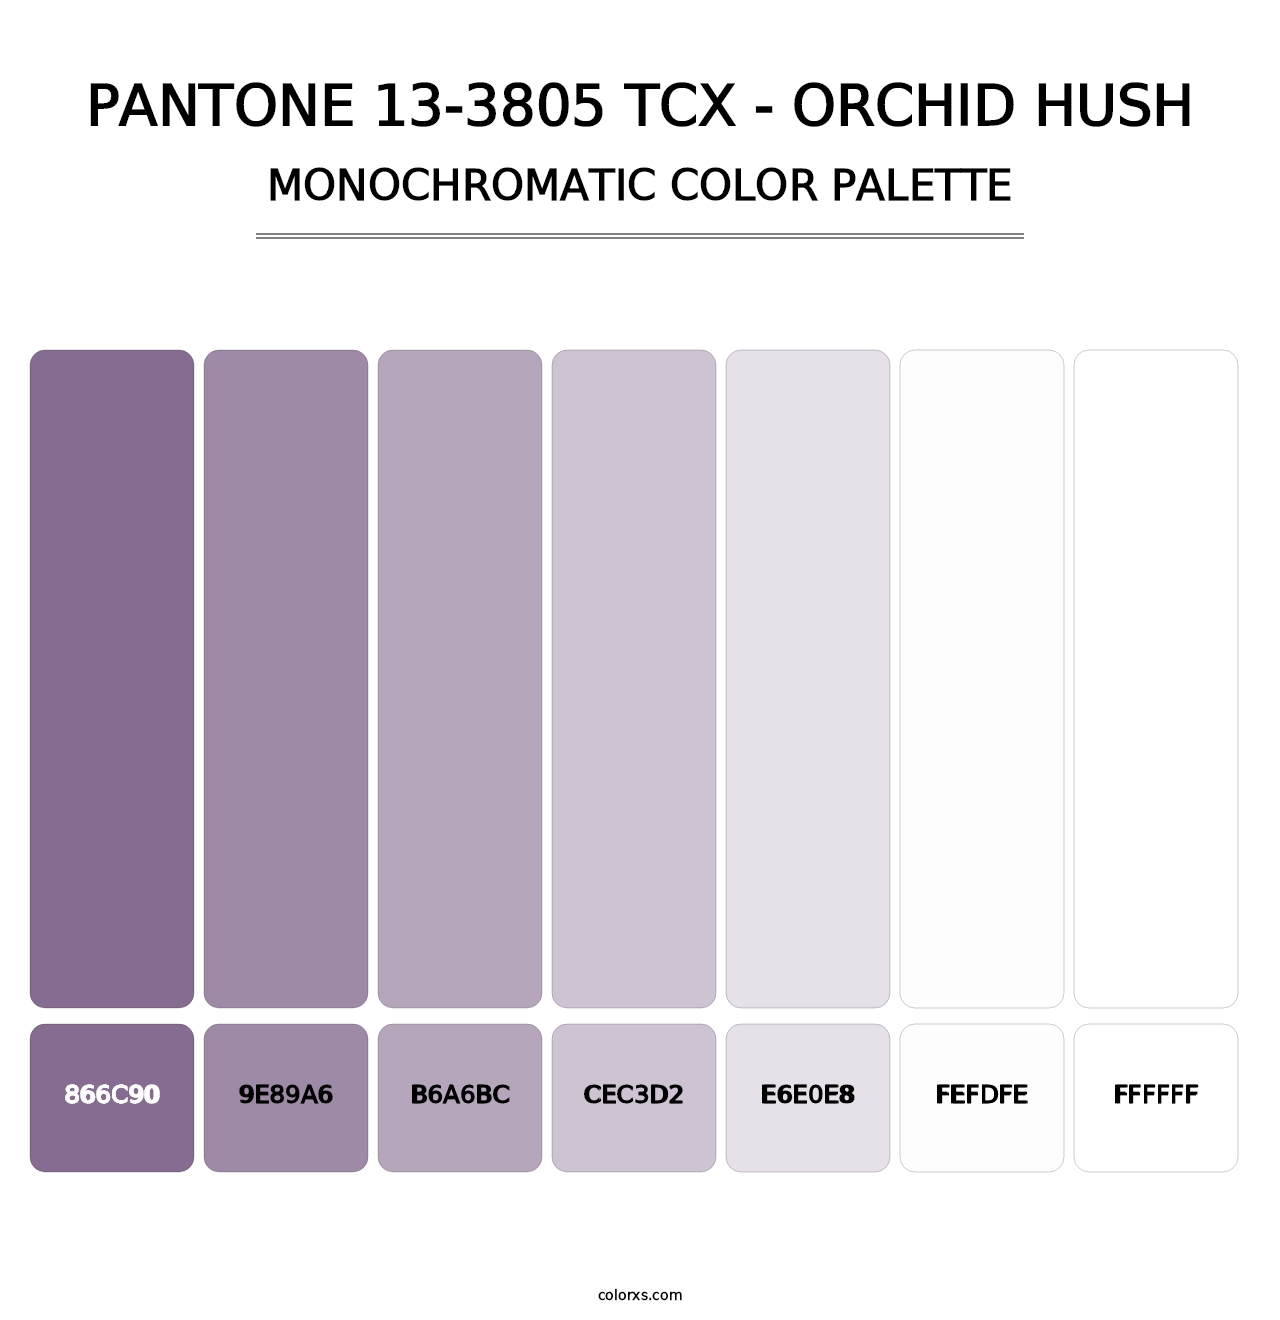 PANTONE 13-3805 TCX - Orchid Hush - Monochromatic Color Palette